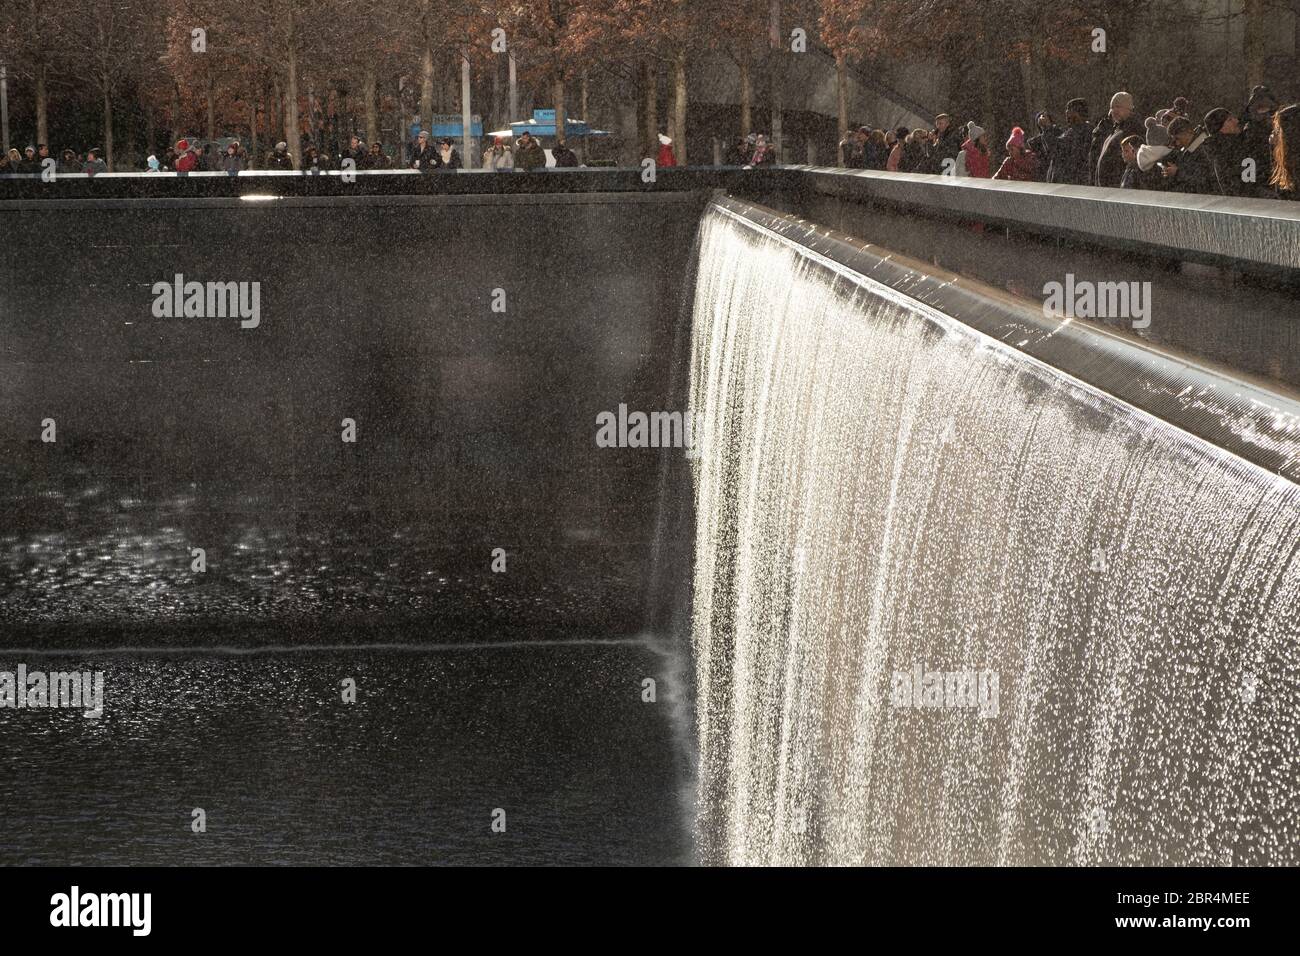 Il memoriale nazionale del 11 settembre a New York City commemorando gli attacchi del 11 settembre 2001, che hanno ucciso 2,977 persone. Progettato da Michael Arad. Foto Stock